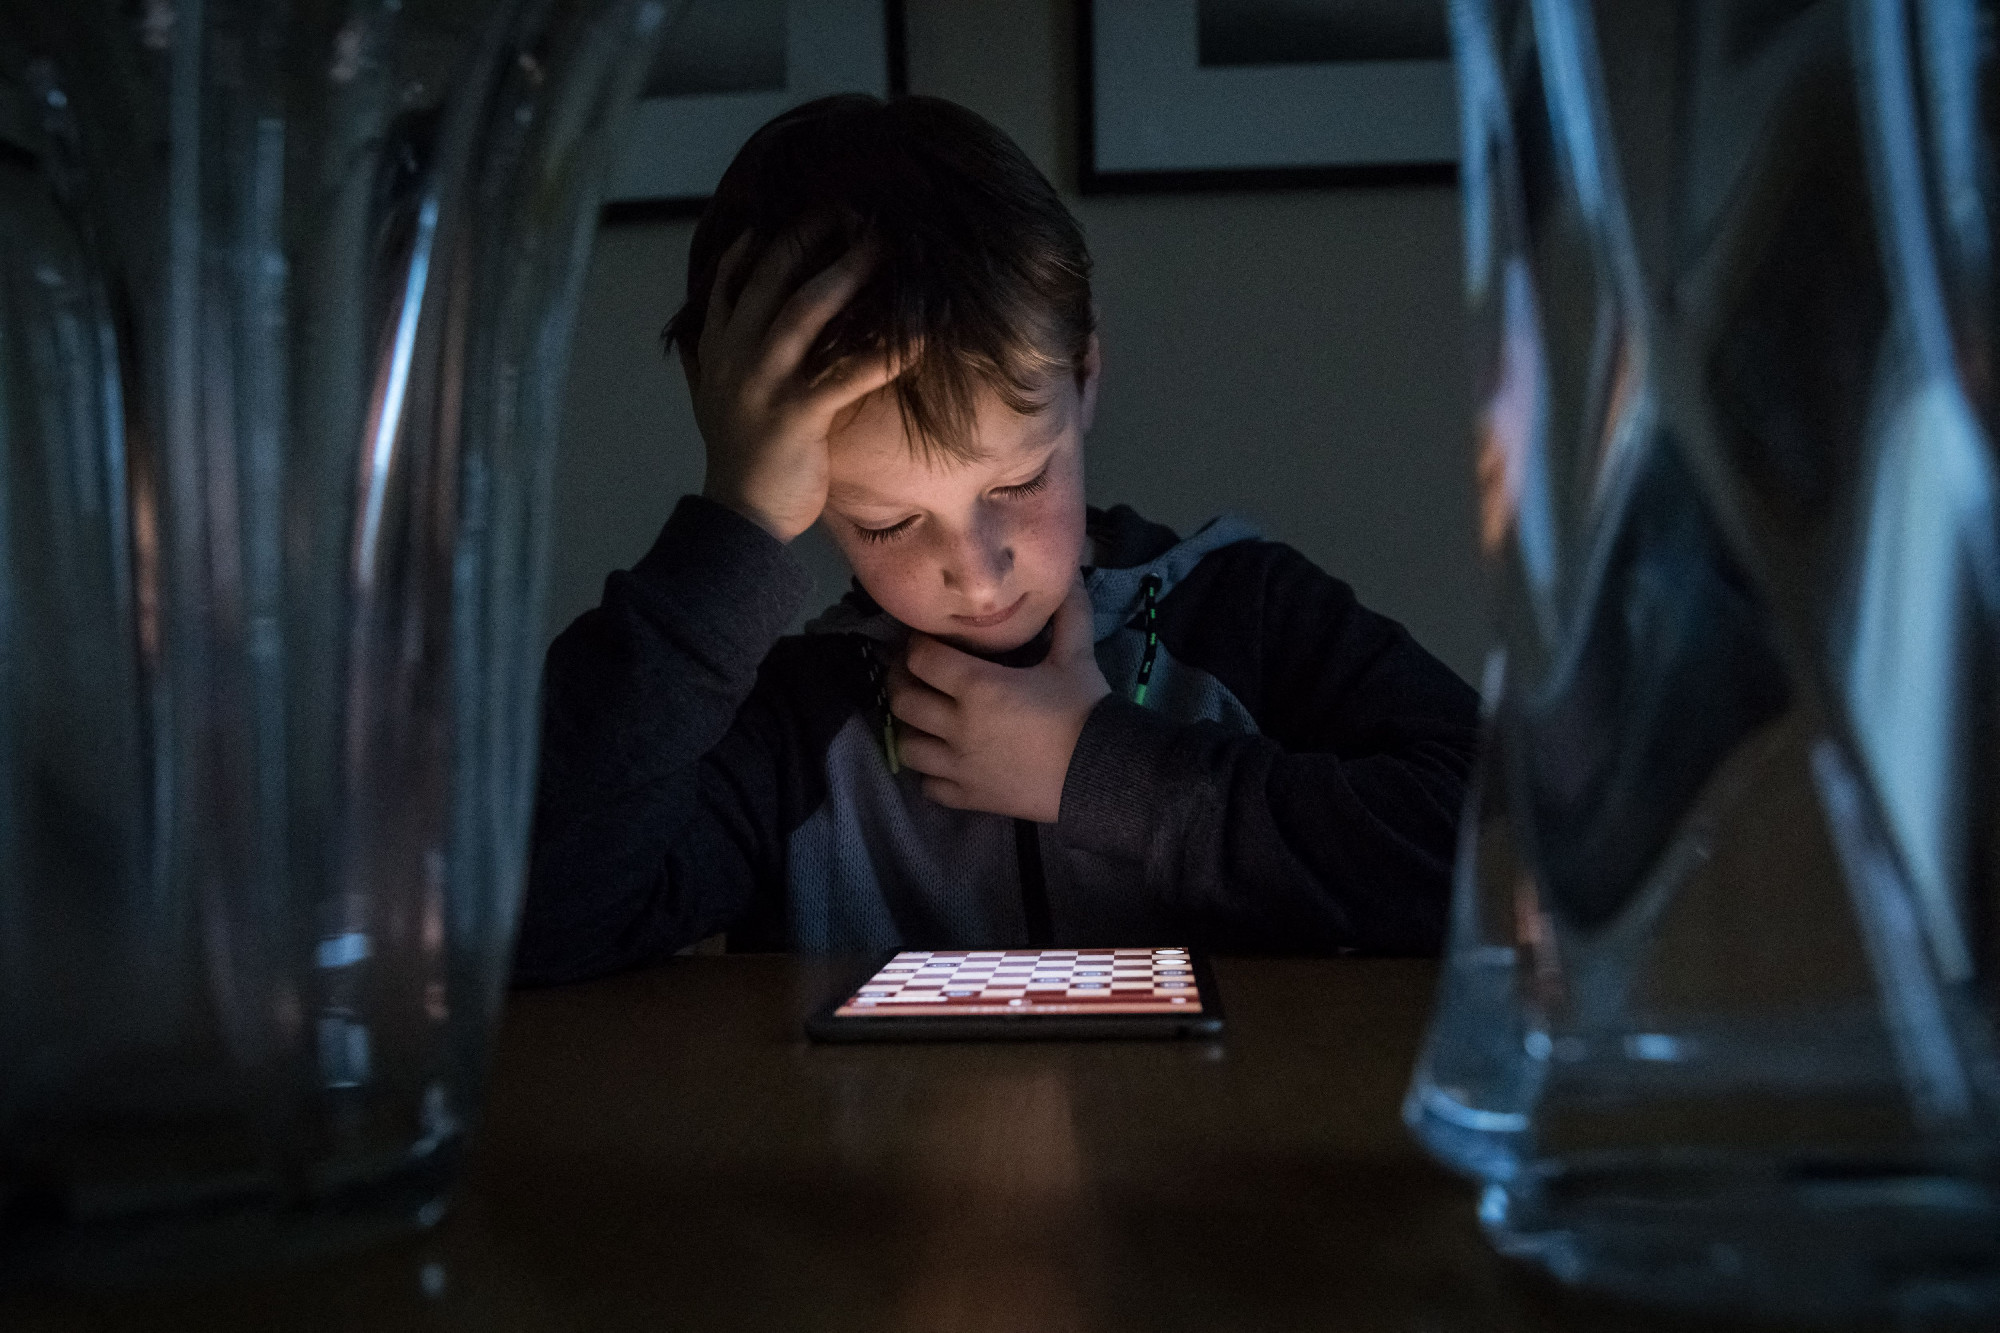 Mit tehet az ember, ha a gyermekét zaklatják az online térben?